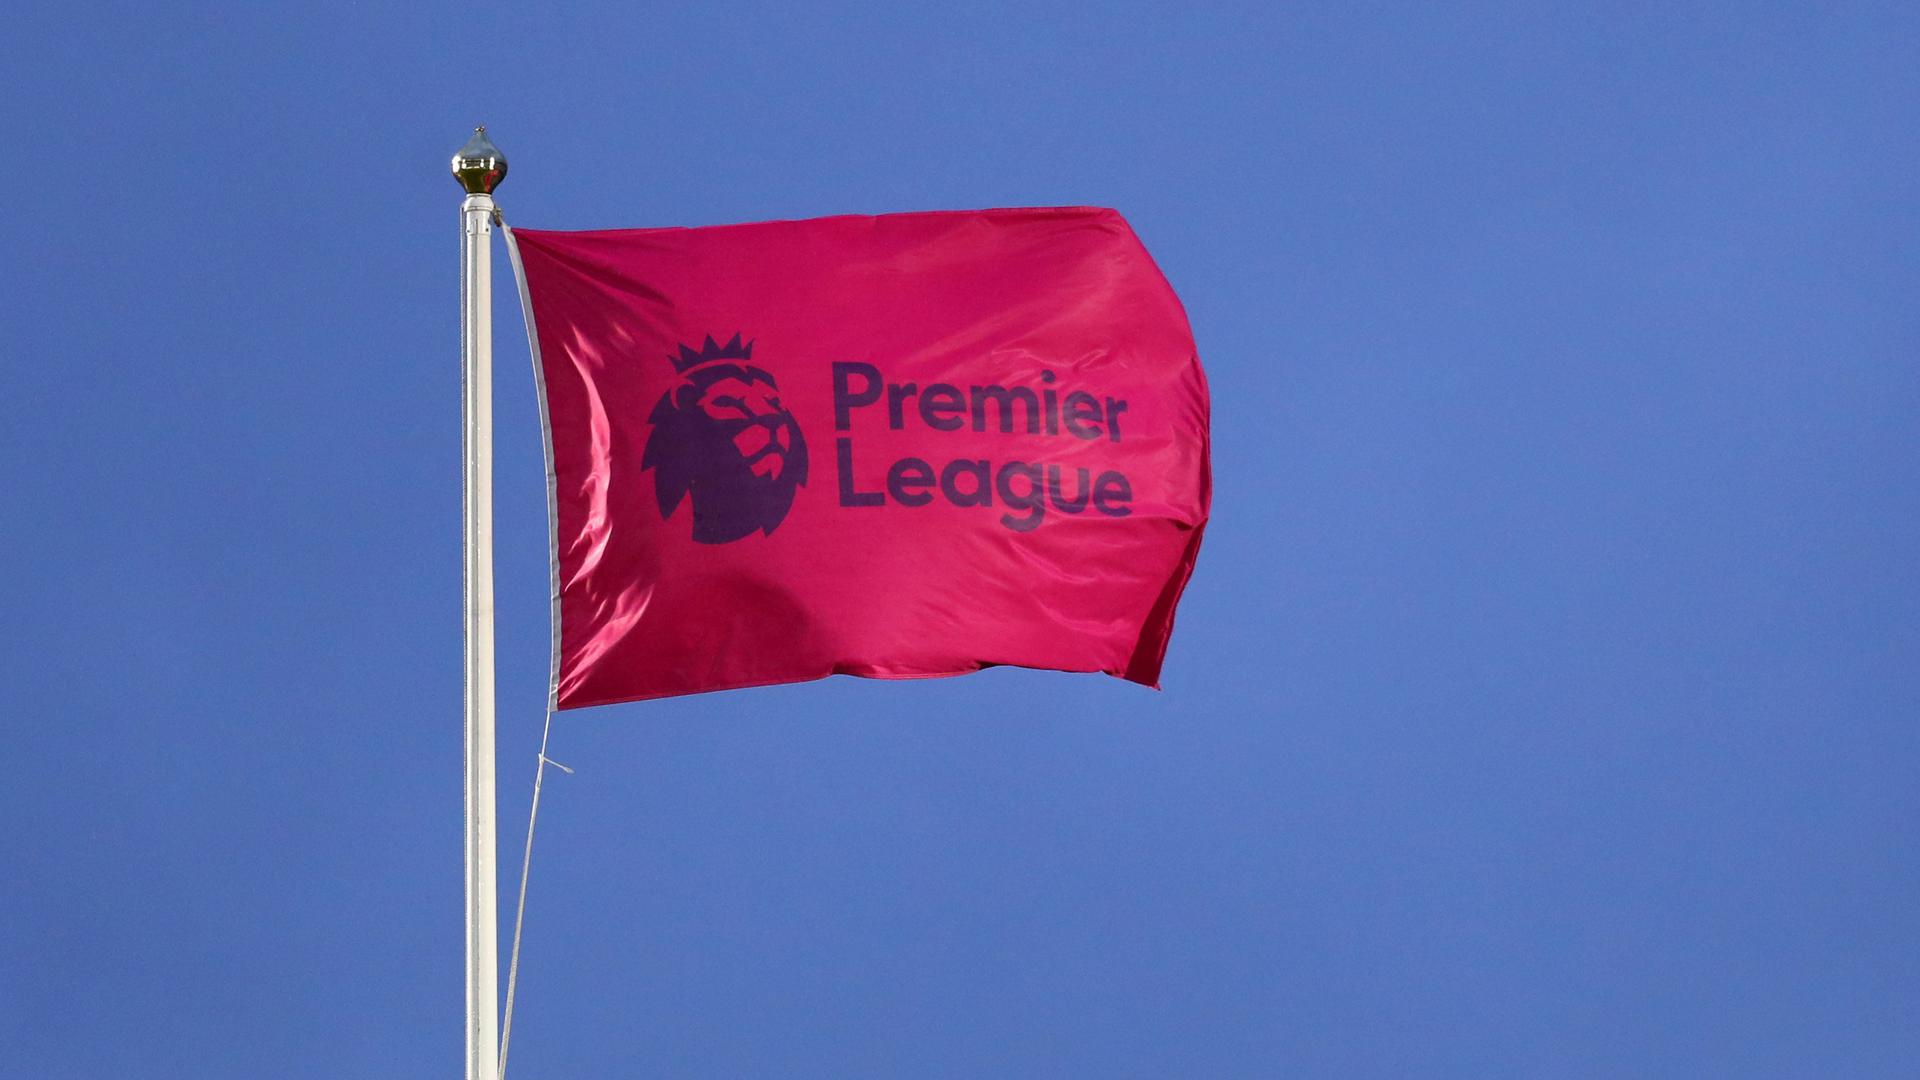 La Premier League ya tiene su primera tanda de horarios